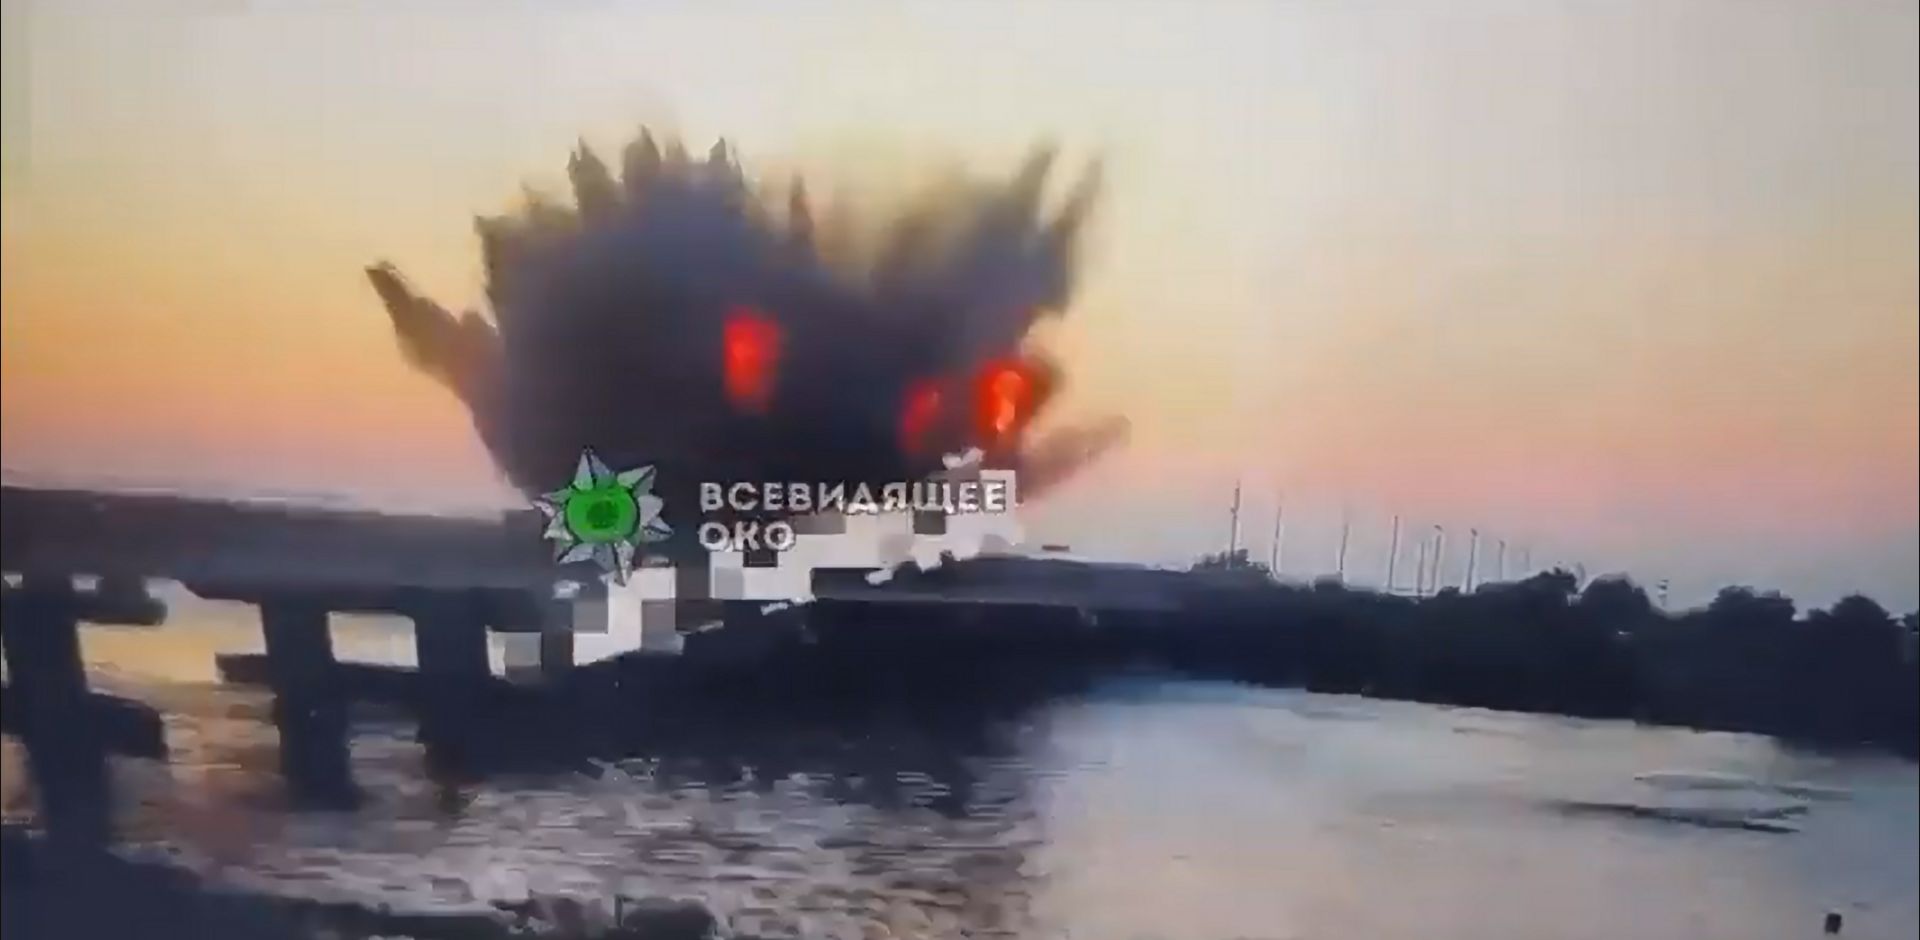 Βίντεο: Η στιγμή που πύραυλος Storm Shadow διαλύει τη γέφυρα του Τσονάρ στην Κριμαία